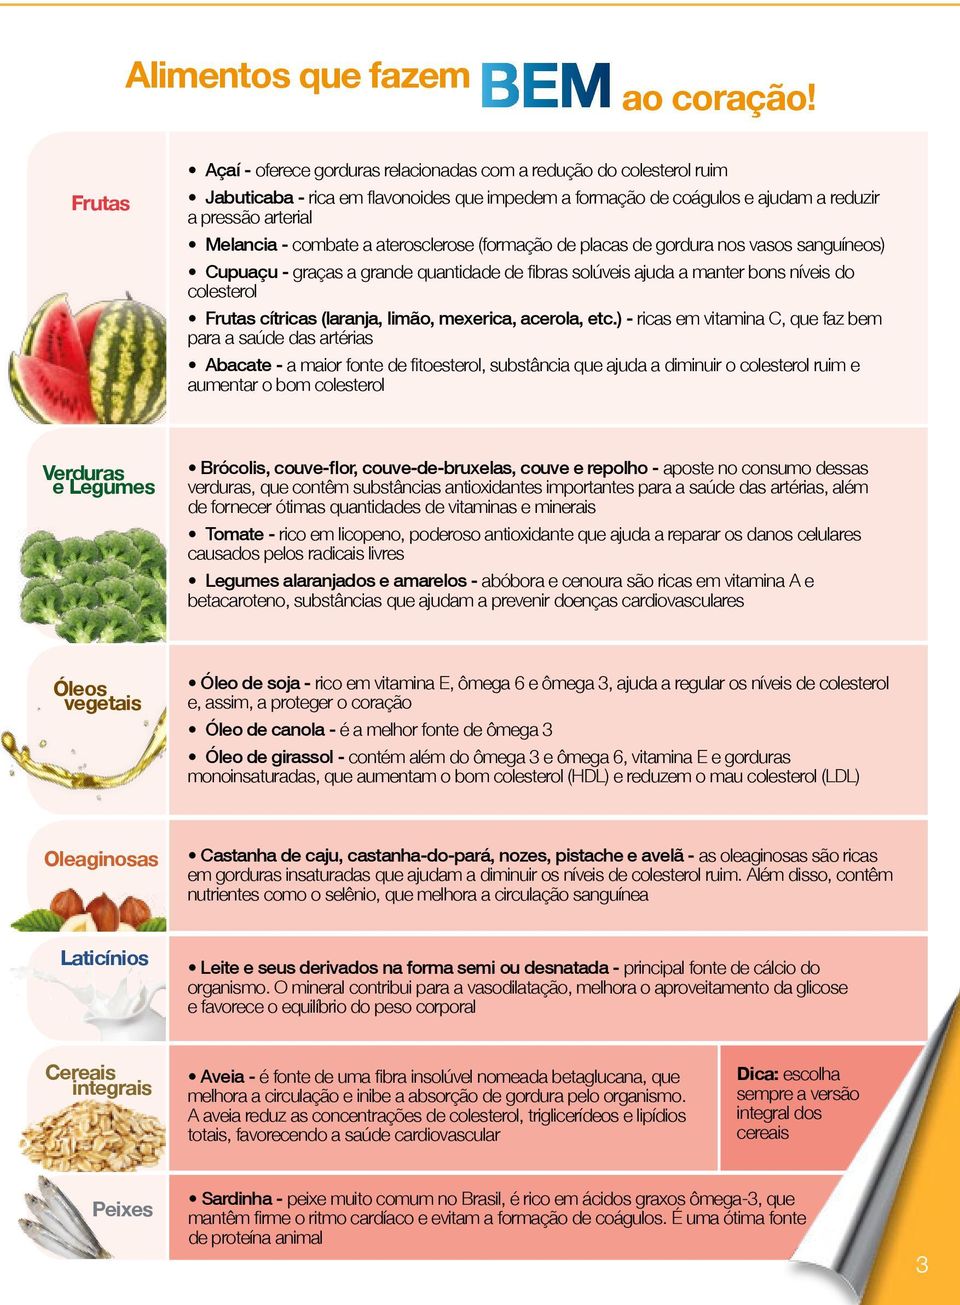 combate a aterosclerose (formação de placas de gordura nos vasos sanguíneos) Cupuaçu - graças a grande quantidade de fibras solúveis ajuda a manter bons níveis do colesterol Frutas cítricas (laranja,